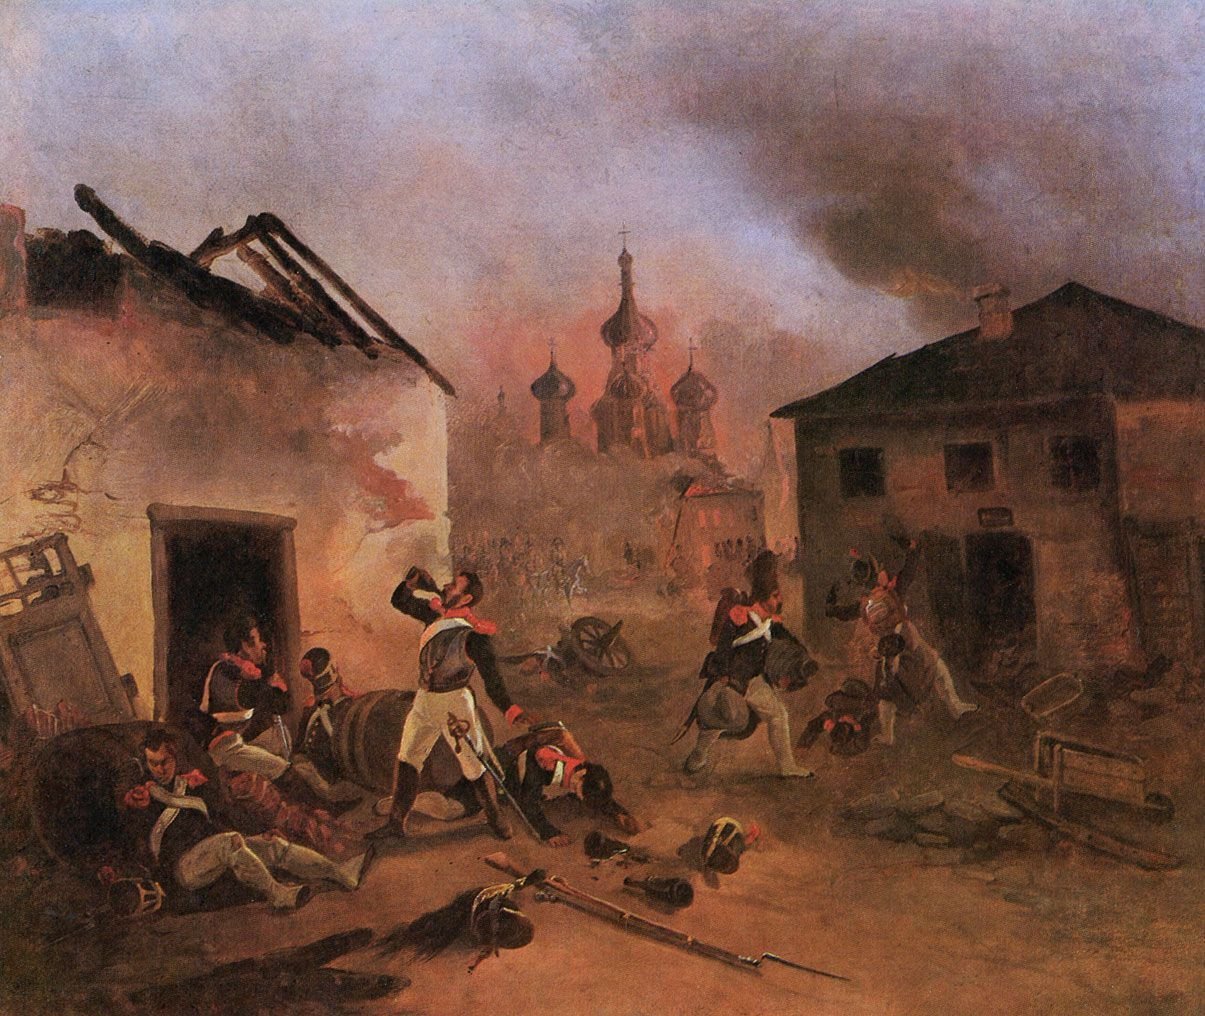 Война в москве 1812